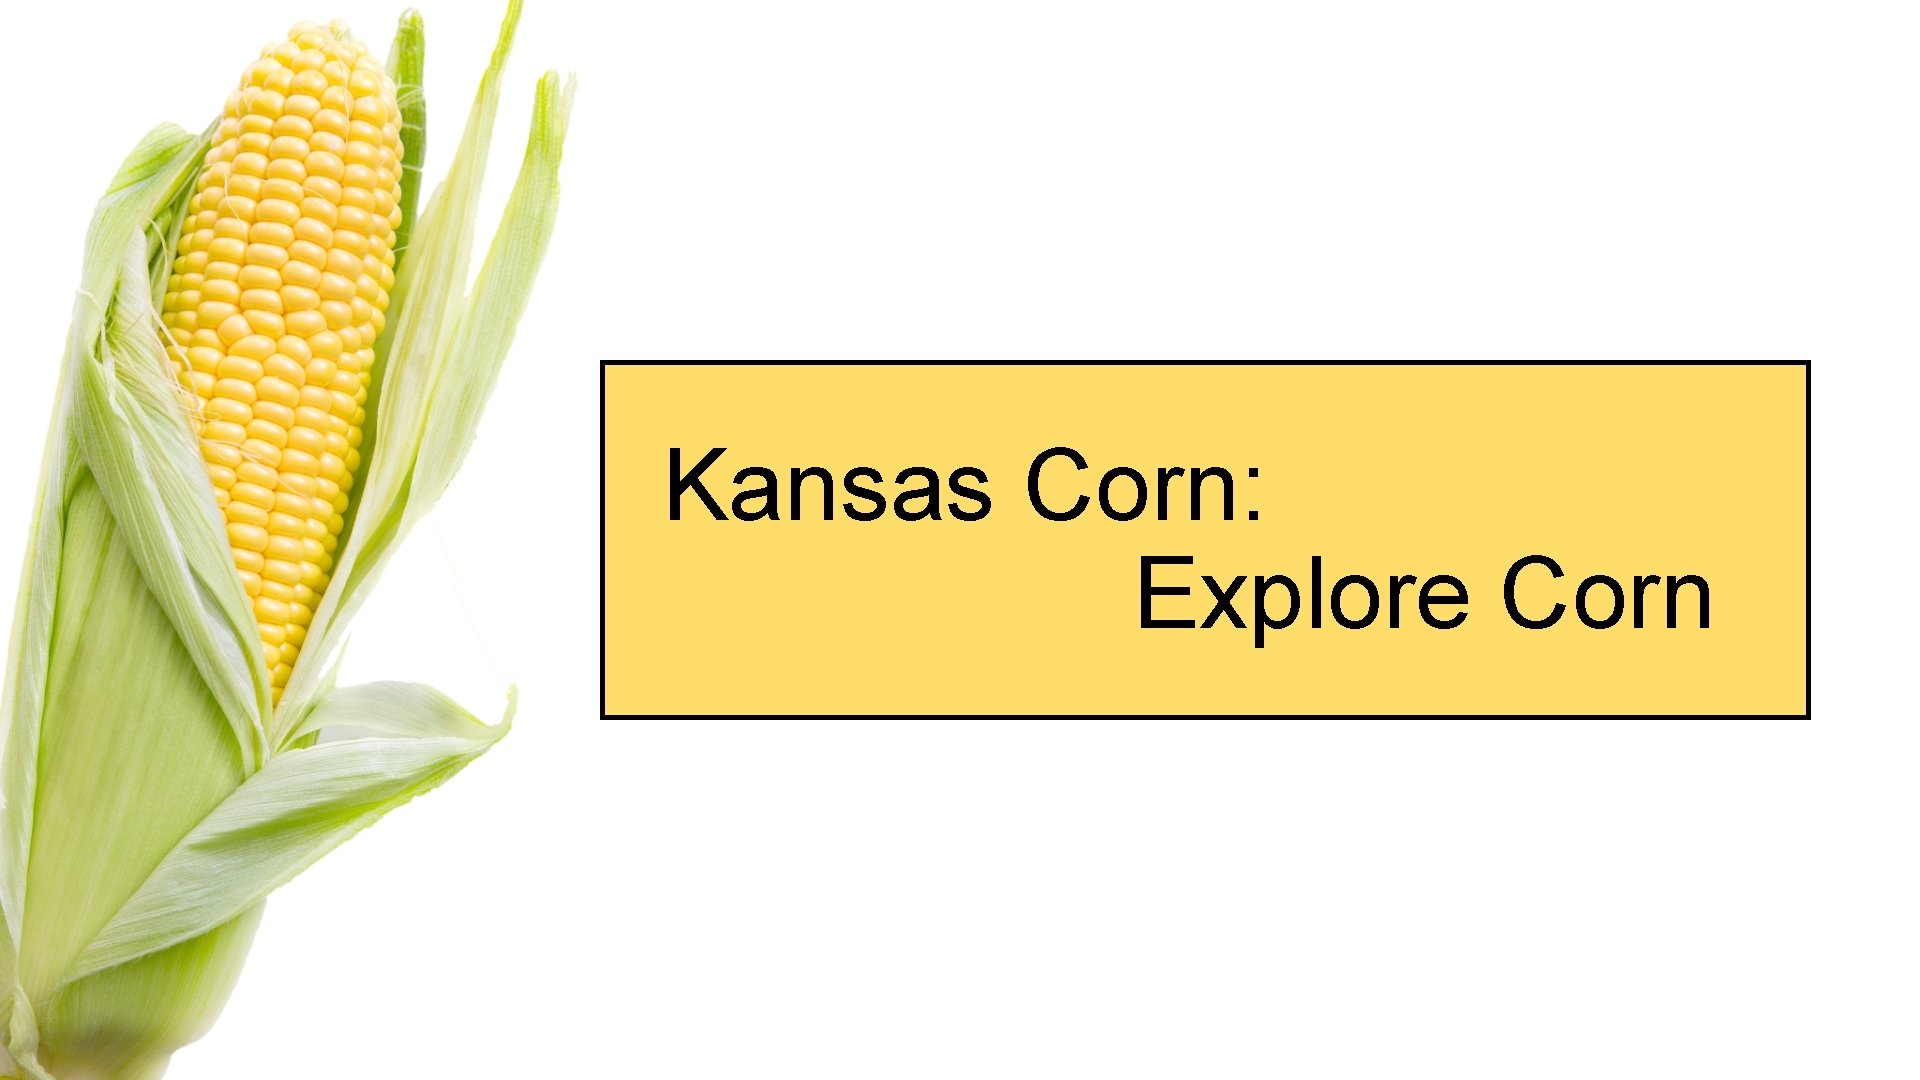 Kansas Corn: Explore Corn 